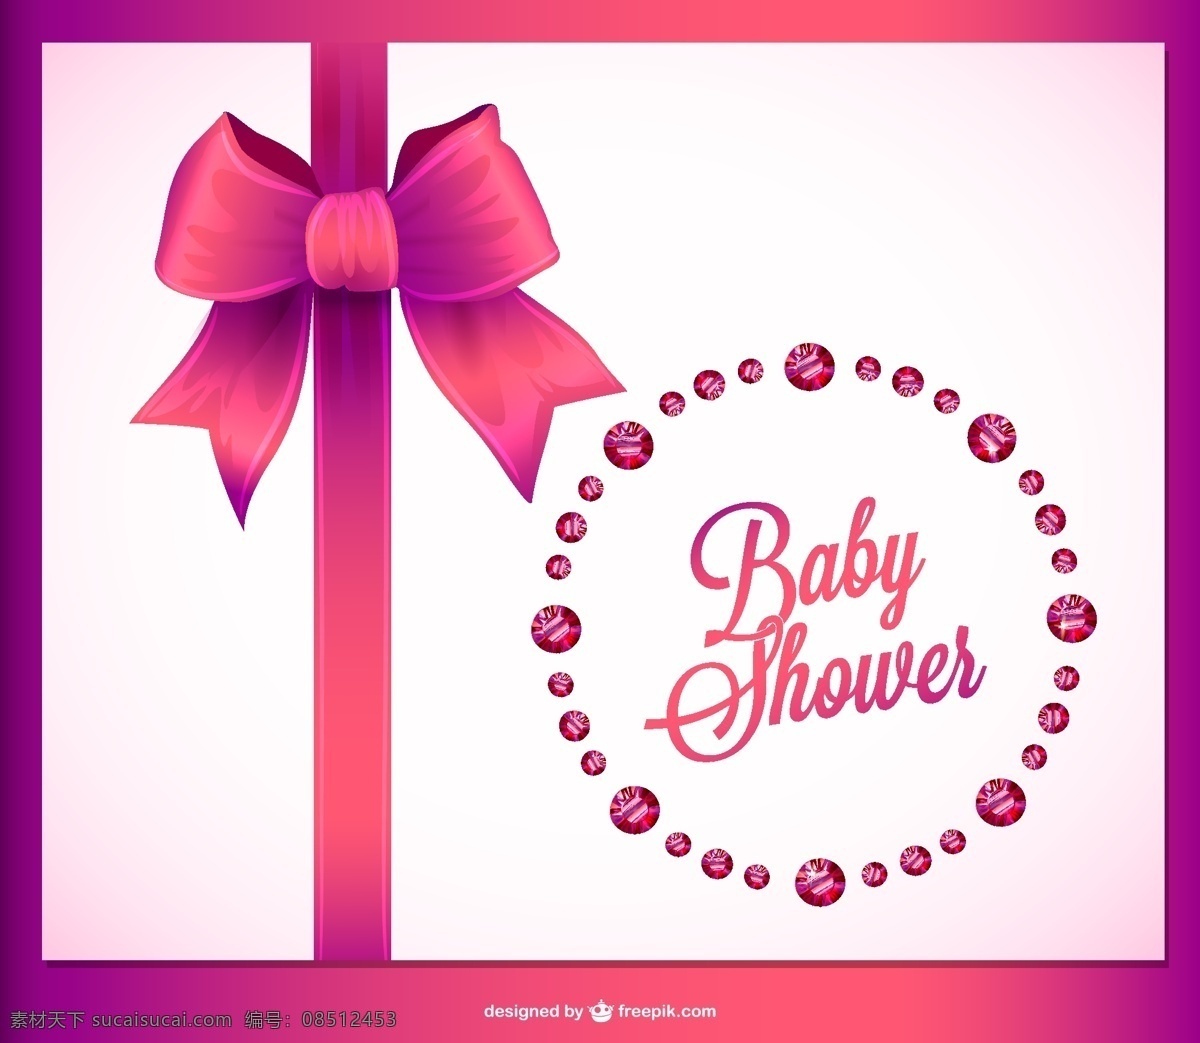 婴儿 沐浴 邀请 水晶 丝带 派对 卡片 婴儿淋浴 钻石 粉红色 图形 庆典 优雅 平面设计 邀请卡 宝贝女孩 插图 淋浴 白色